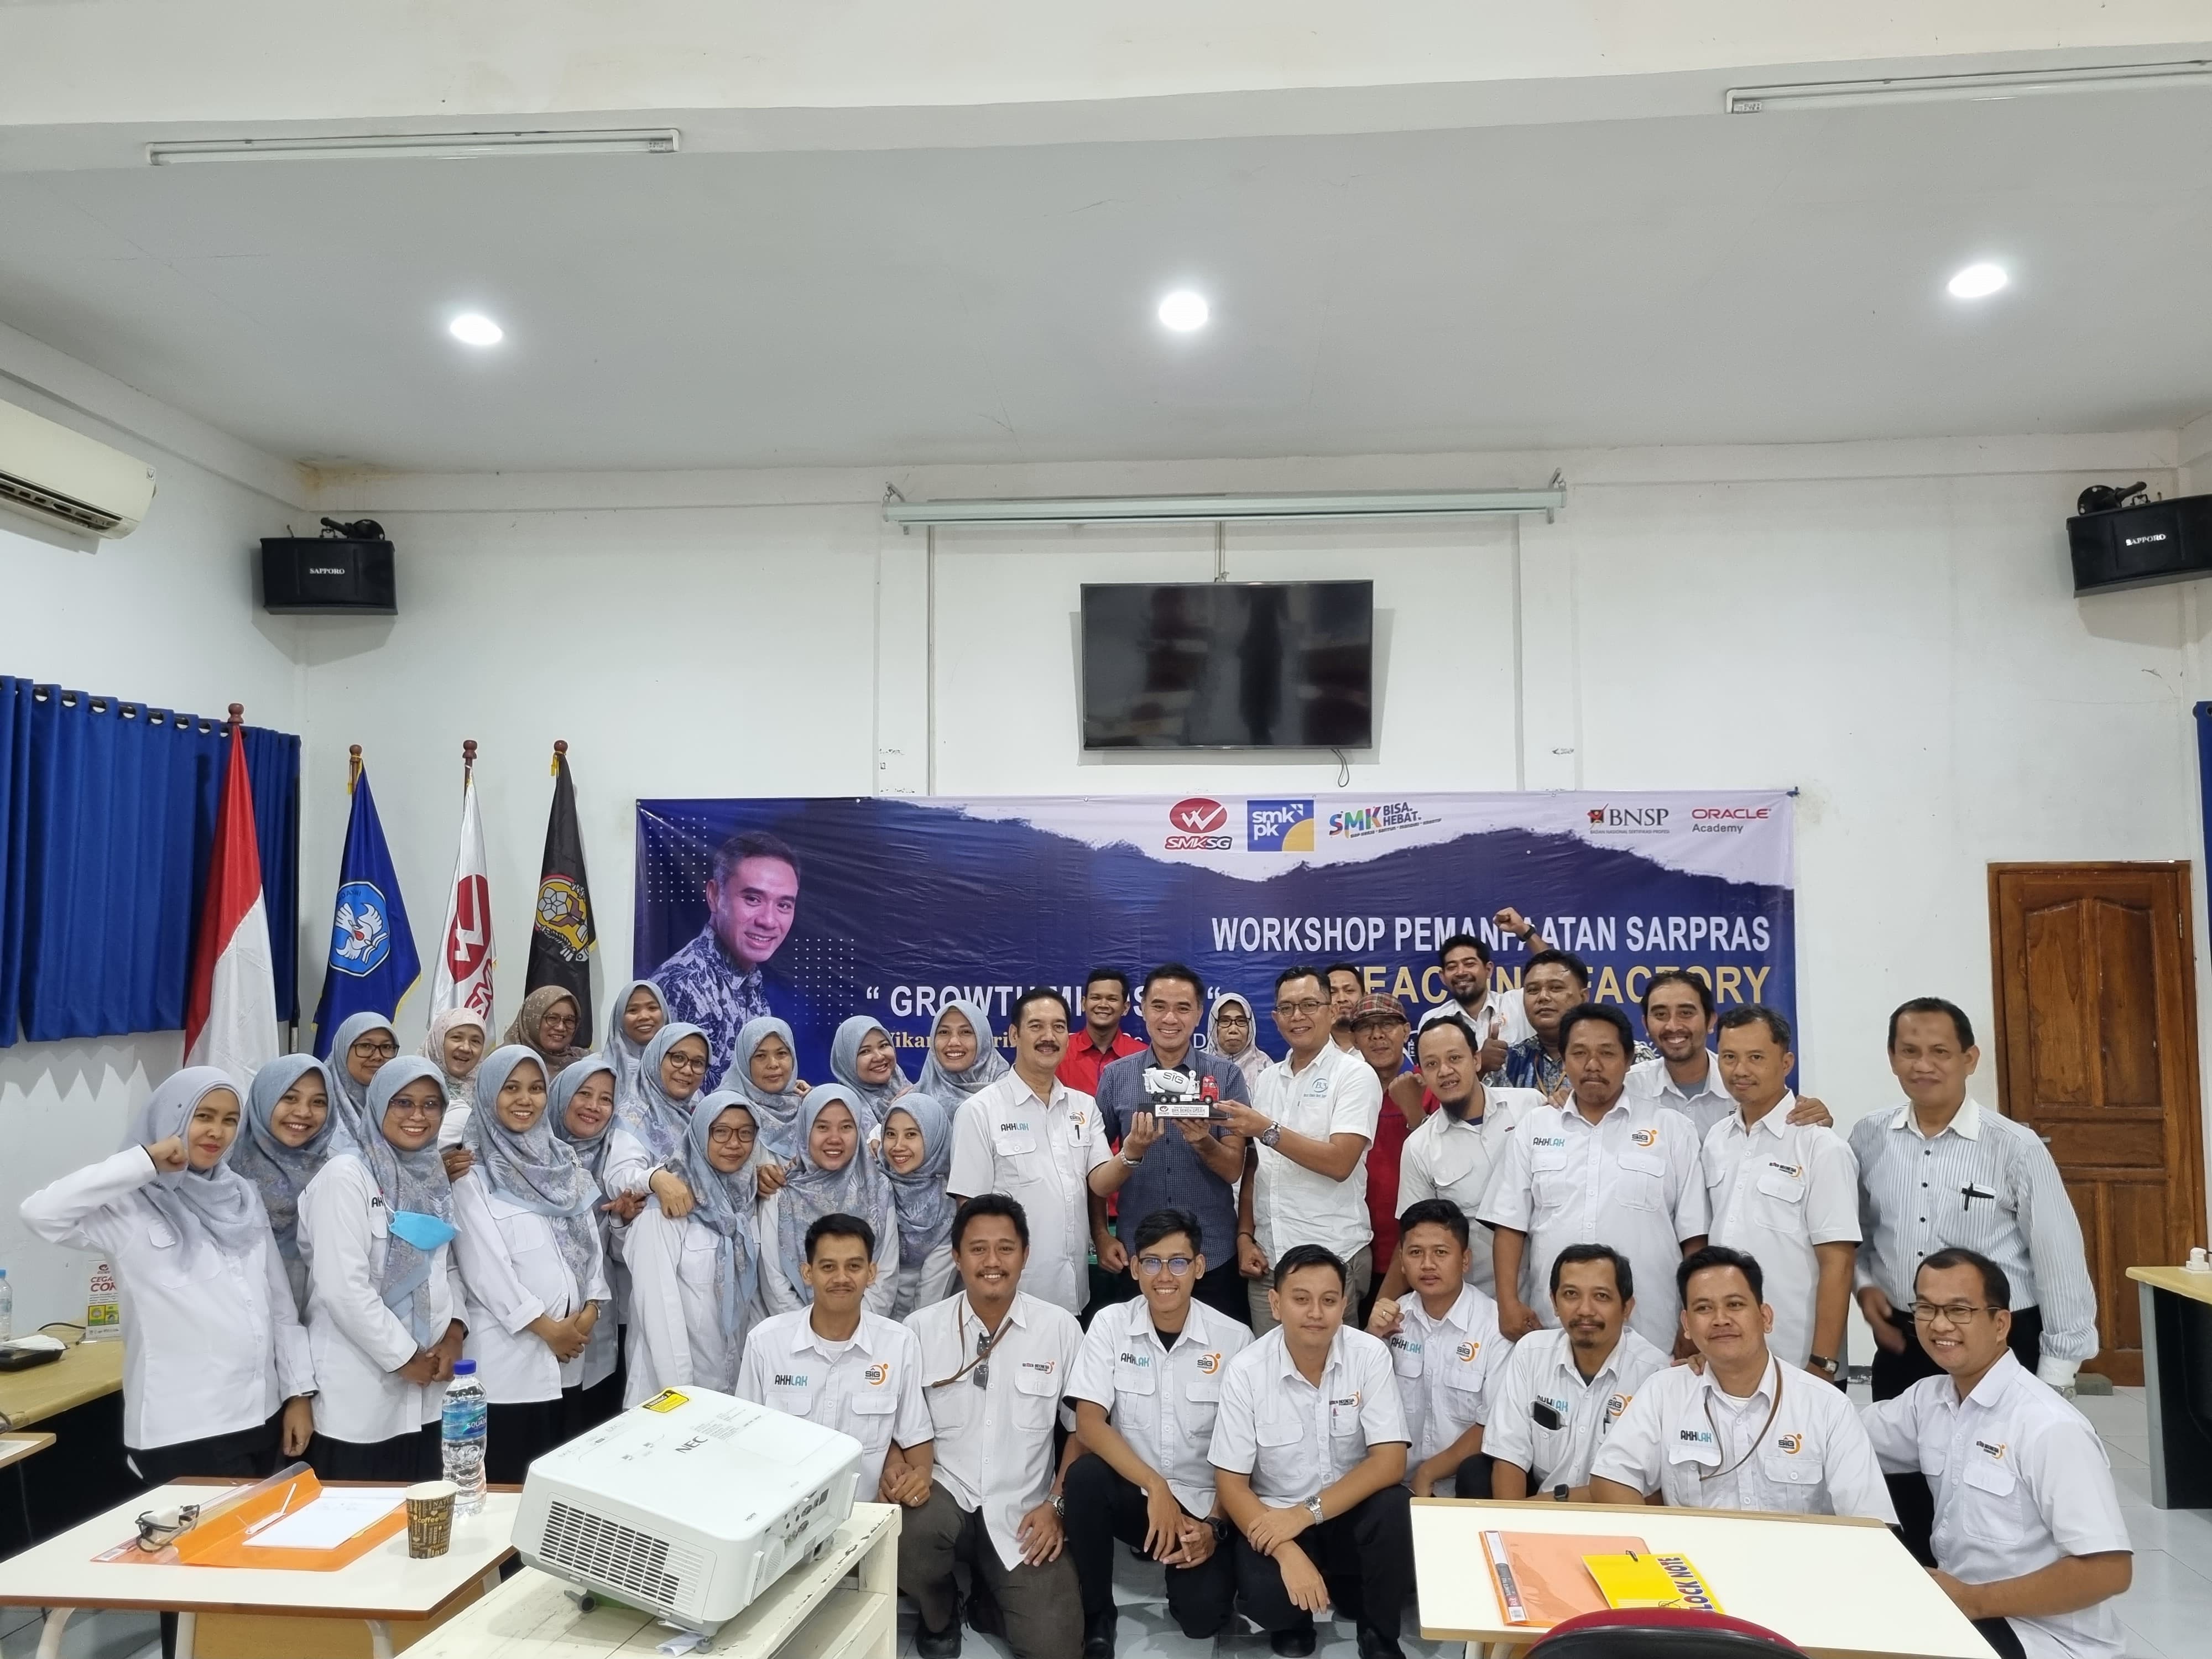 Tingkatkan Mutu Pendidik, SMK Semen Gresik Gelar Workshop Teaching Factory